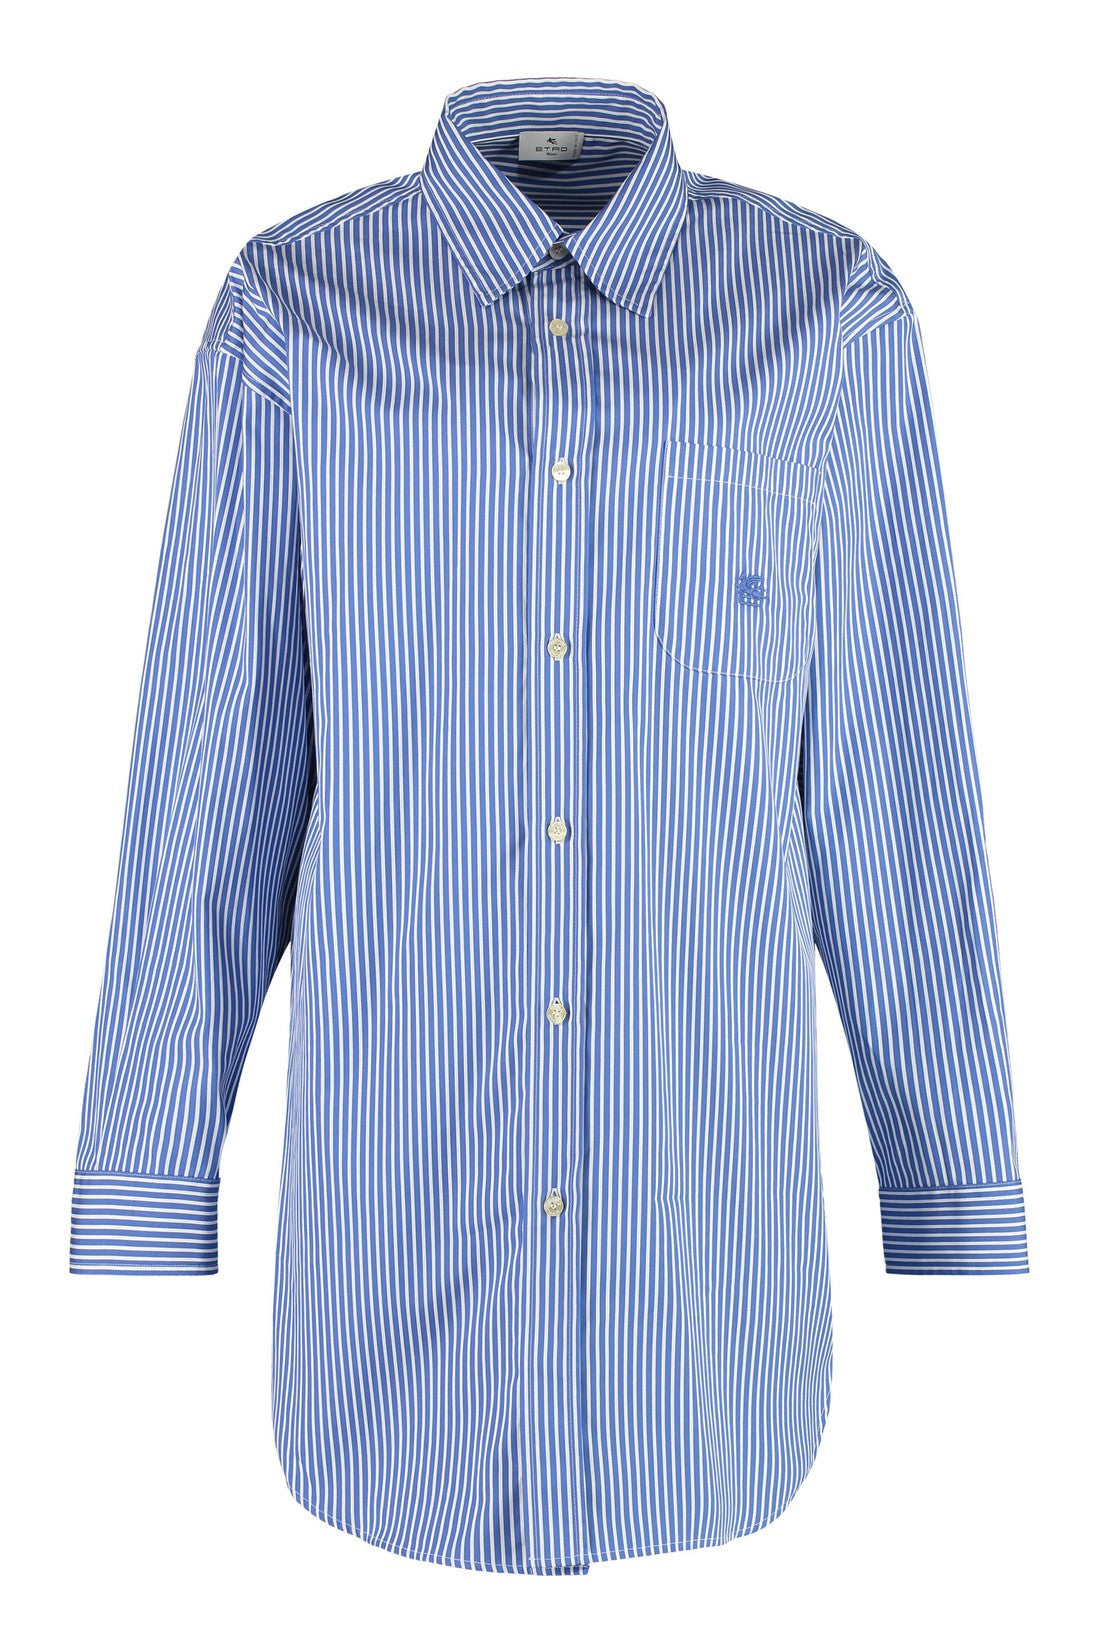 Etro-OUTLET-SALE-Striped cotton shirt-ARCHIVIST